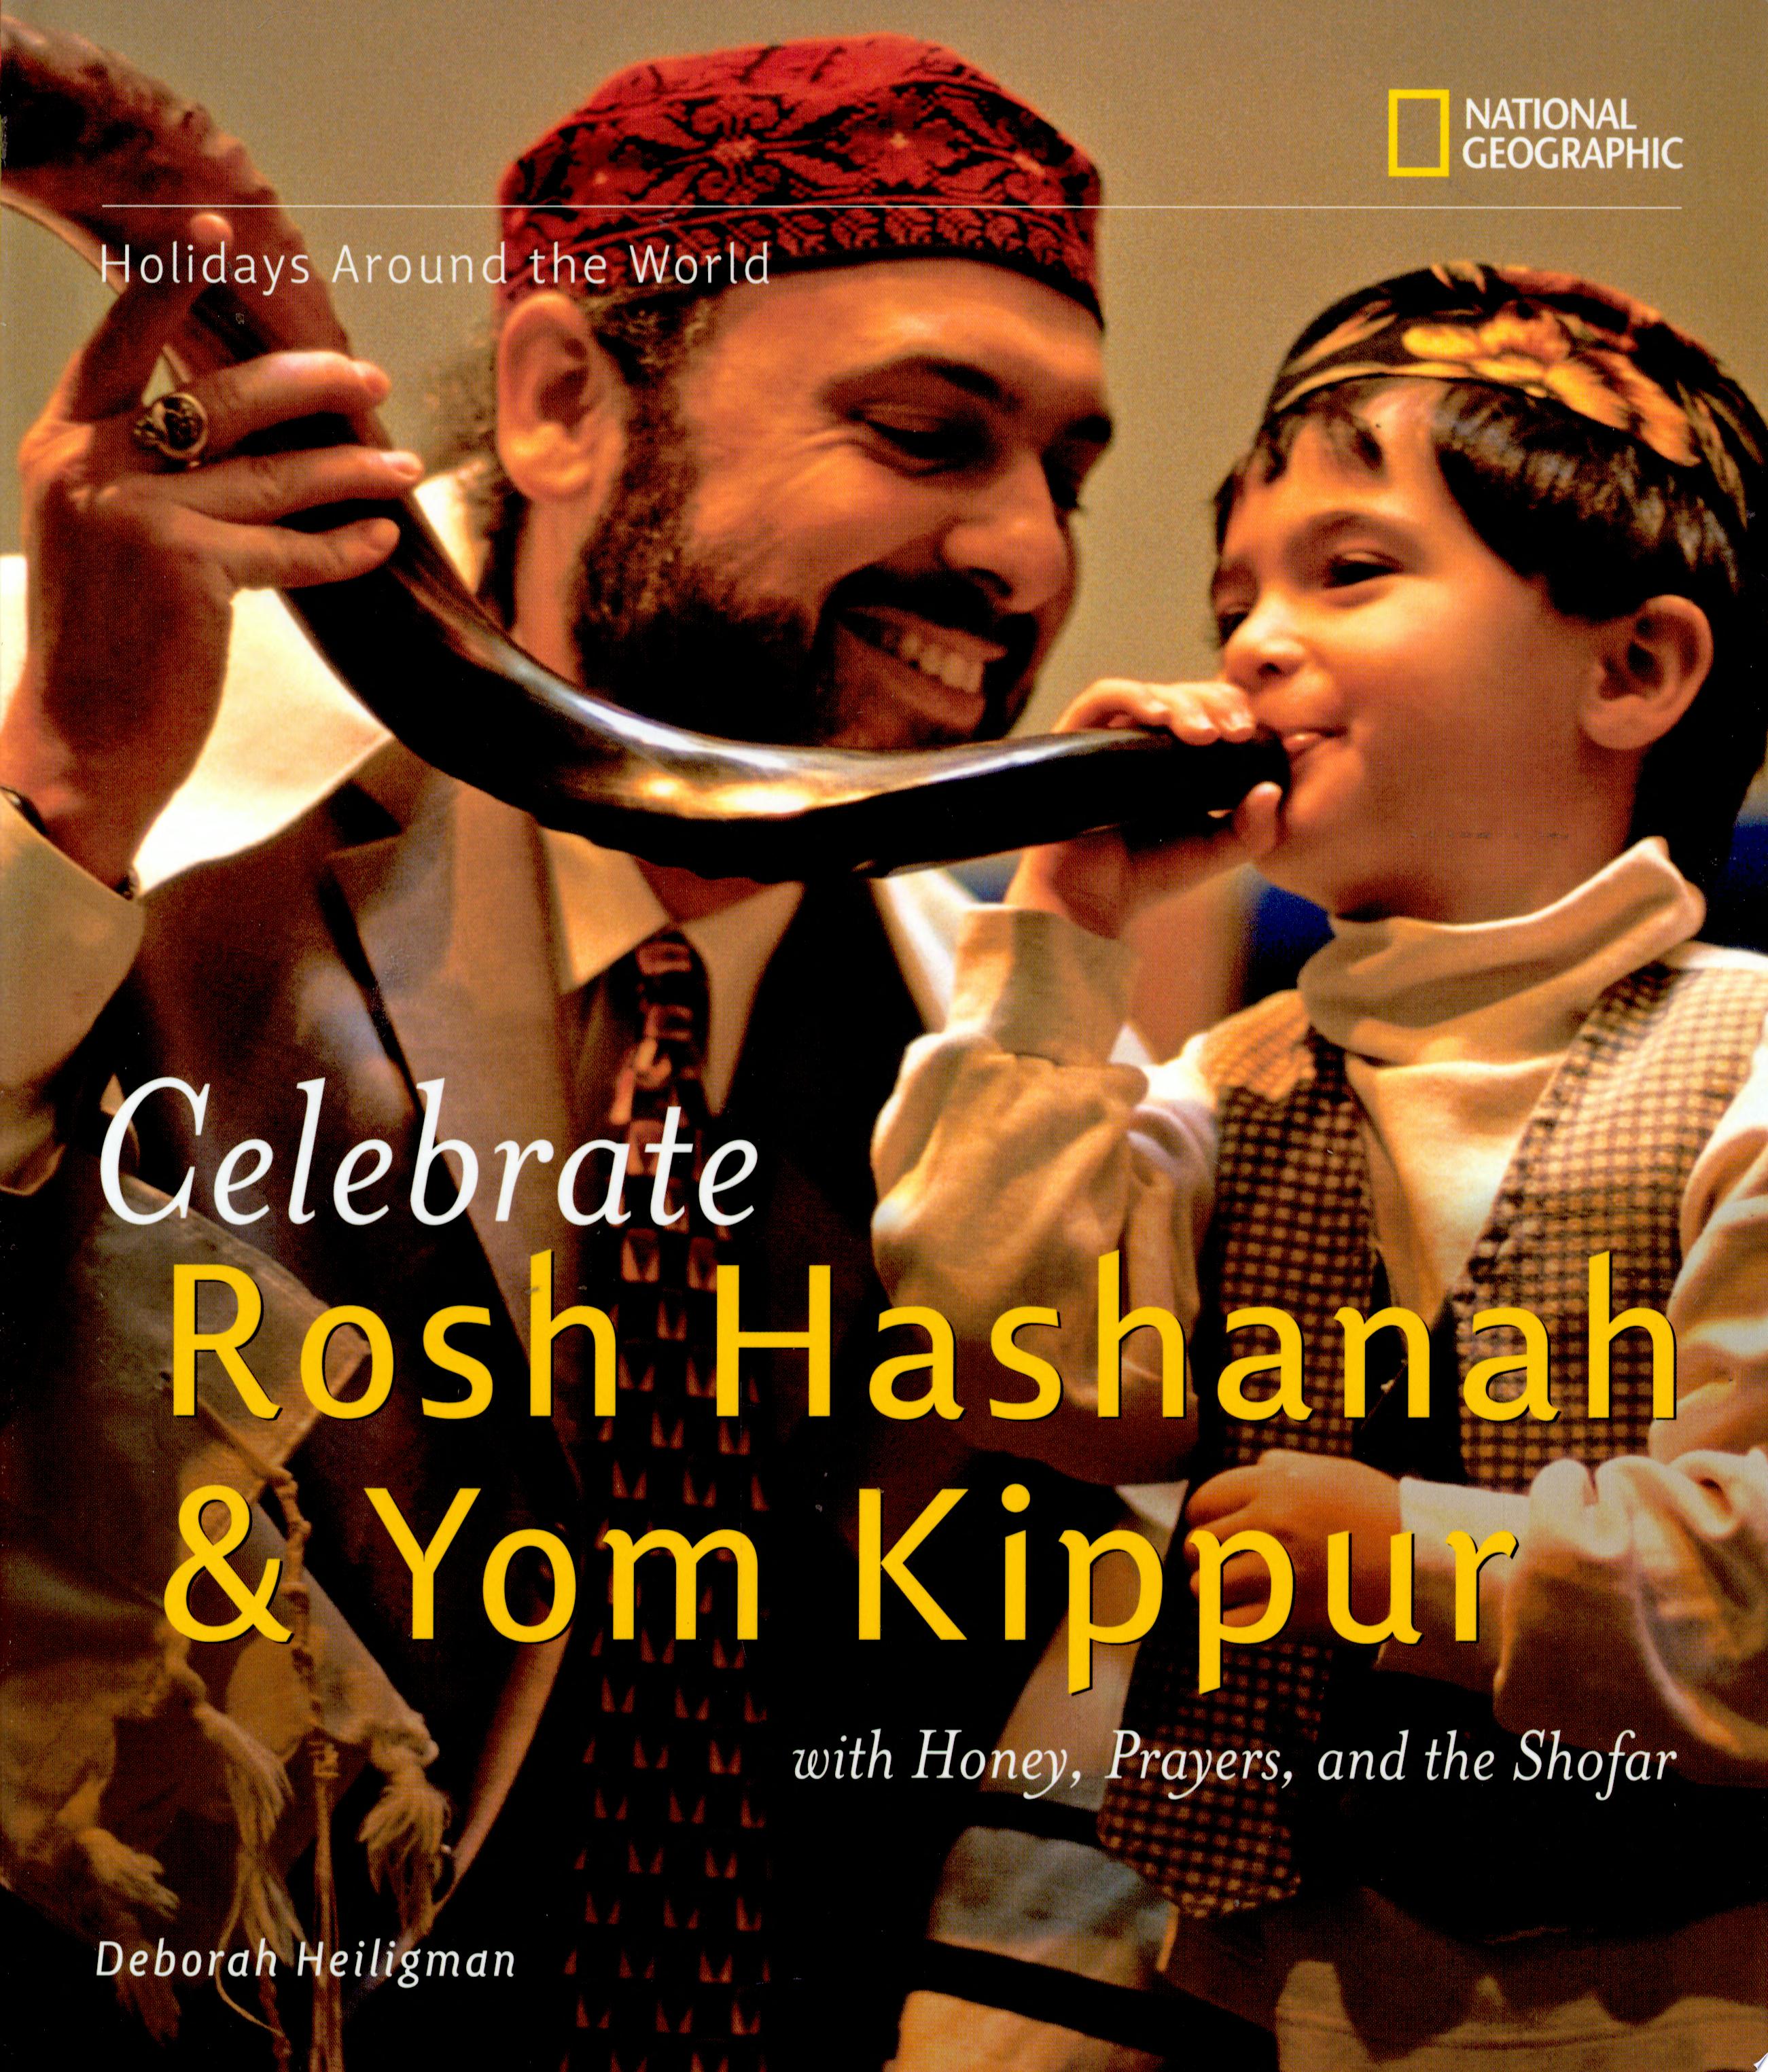 Image for "Celebrate Rosh Hashanah &amp; Yom Kippur"